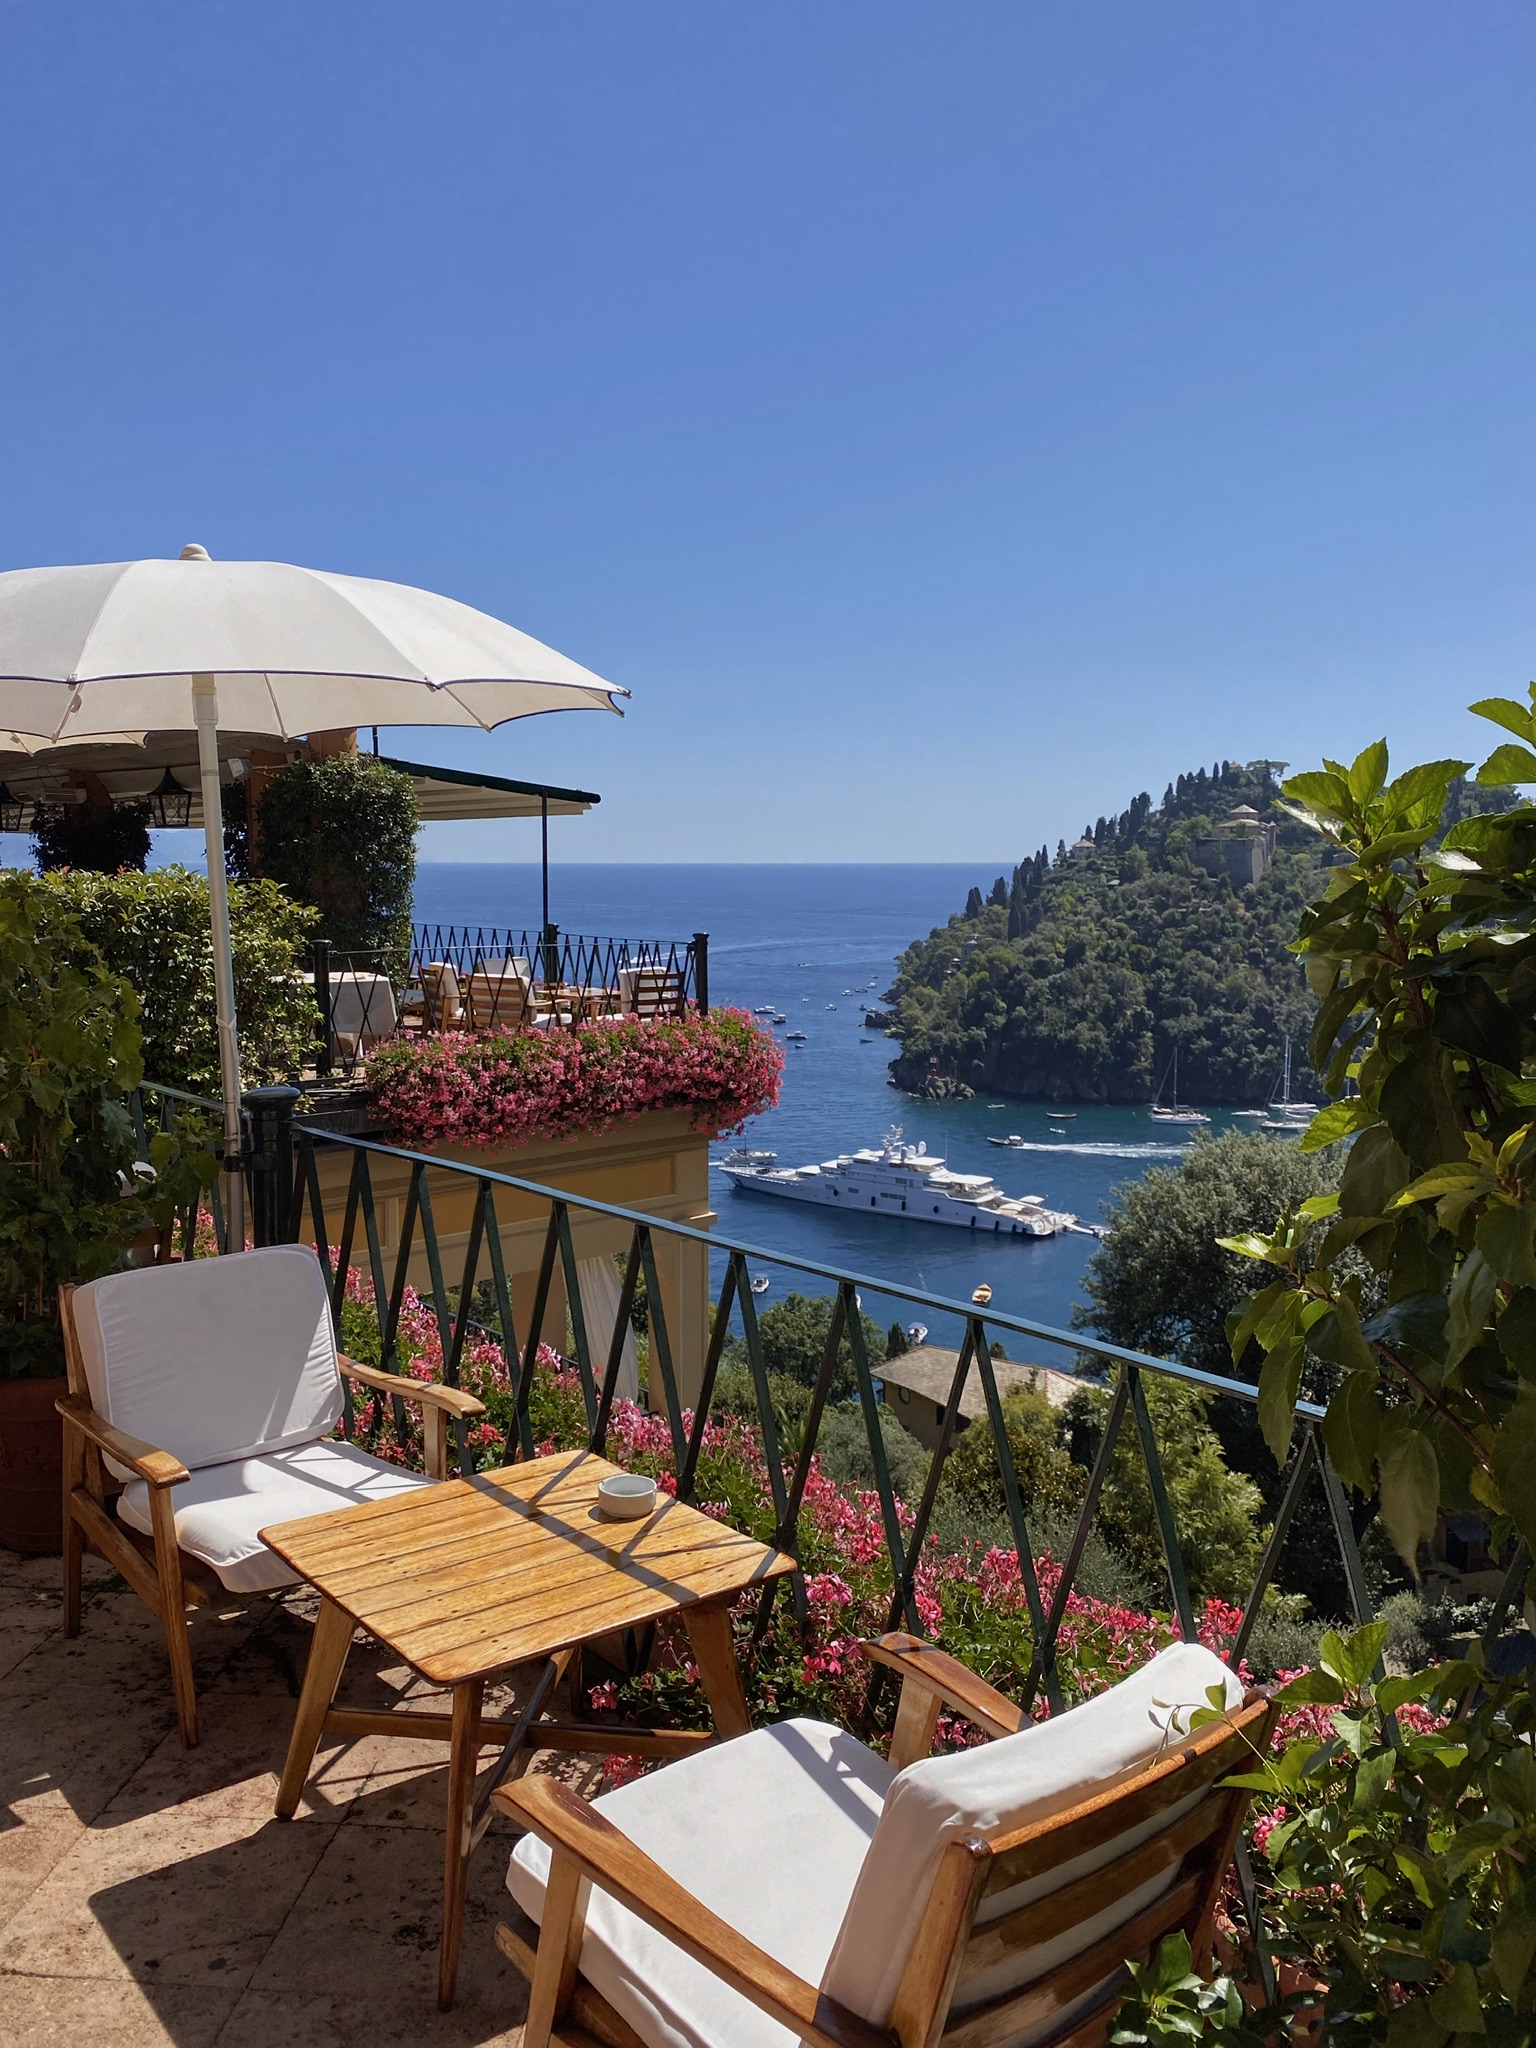 The view from Belmond Splendido, Portofino // Photo Credit Giacomo Sonzini